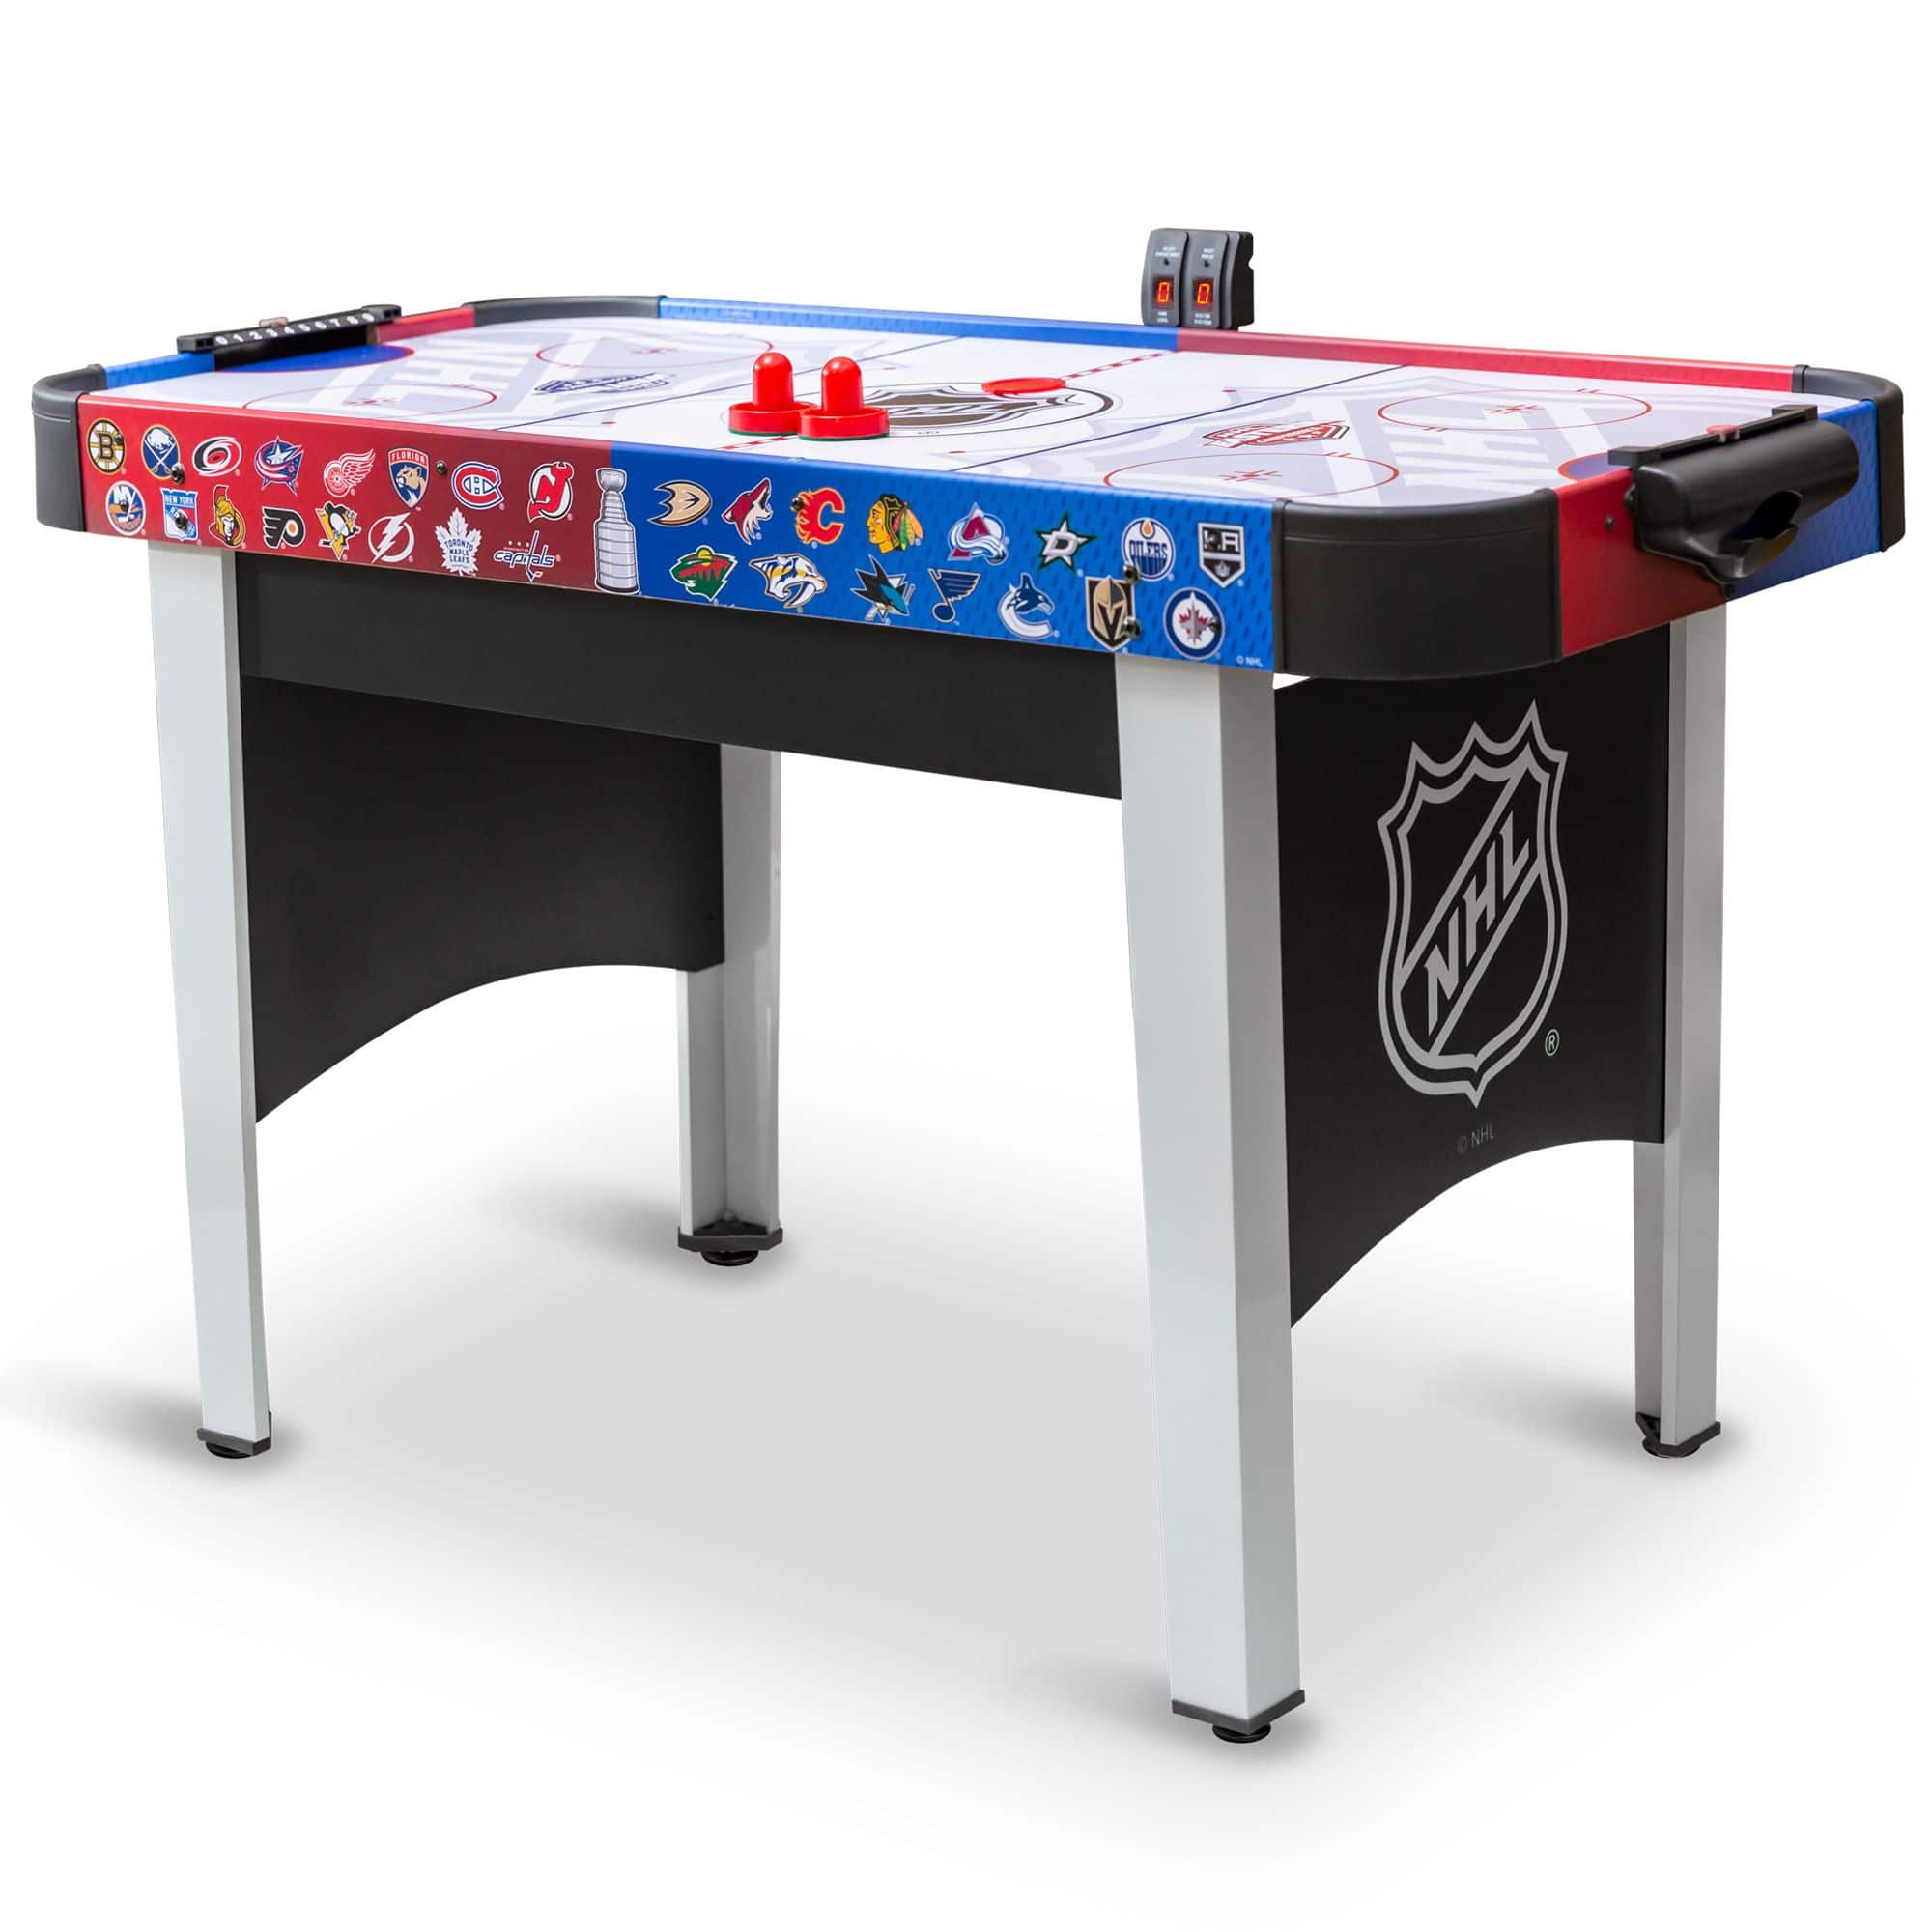 NHL Ice Breaker: The Card Hockey Board Game, Board Game